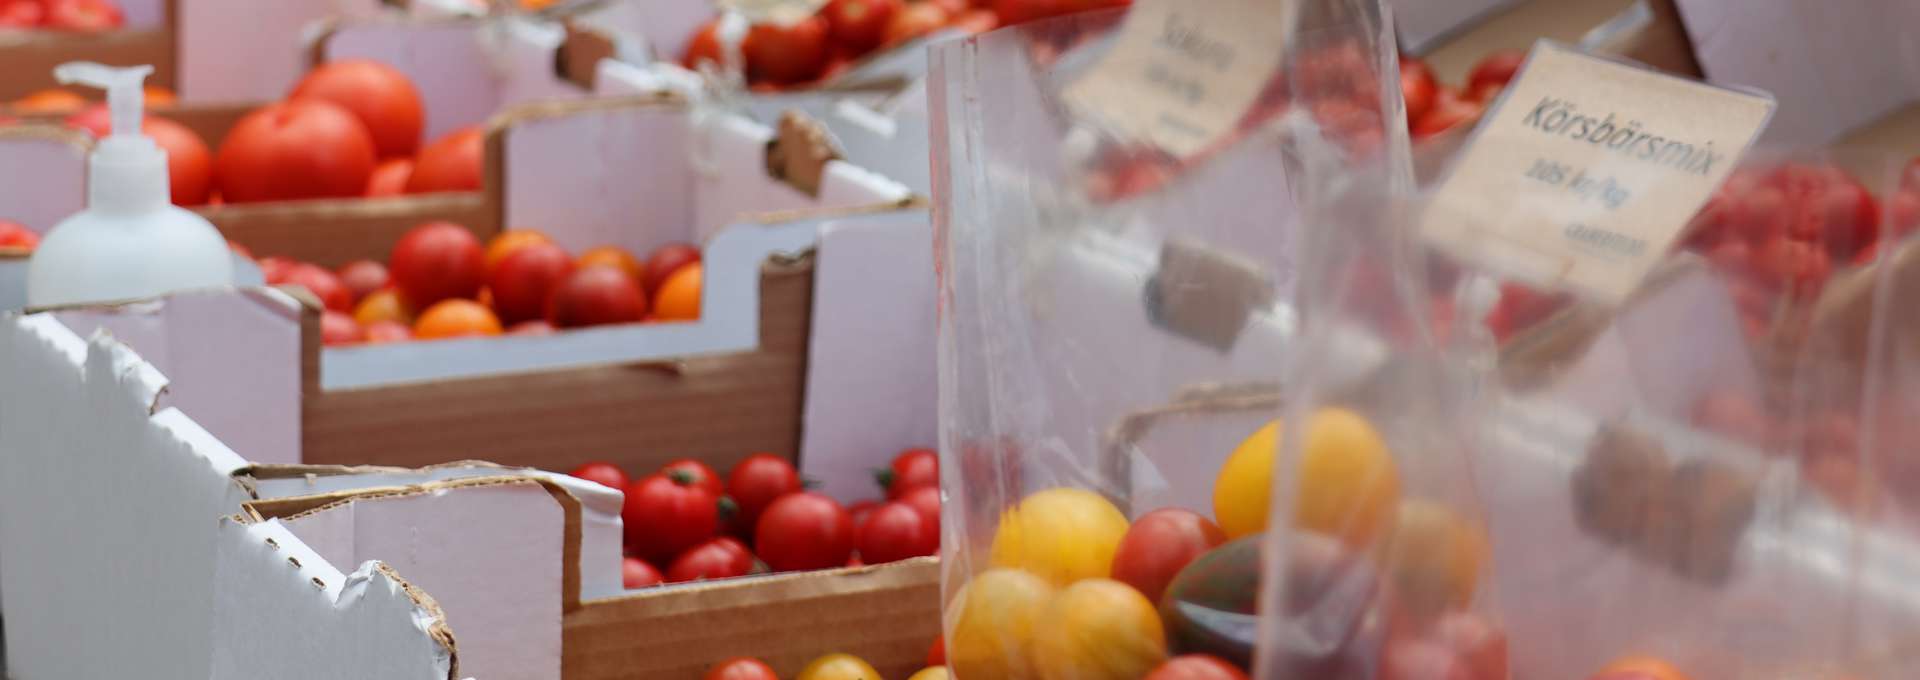 vita låder på rad med tomater i